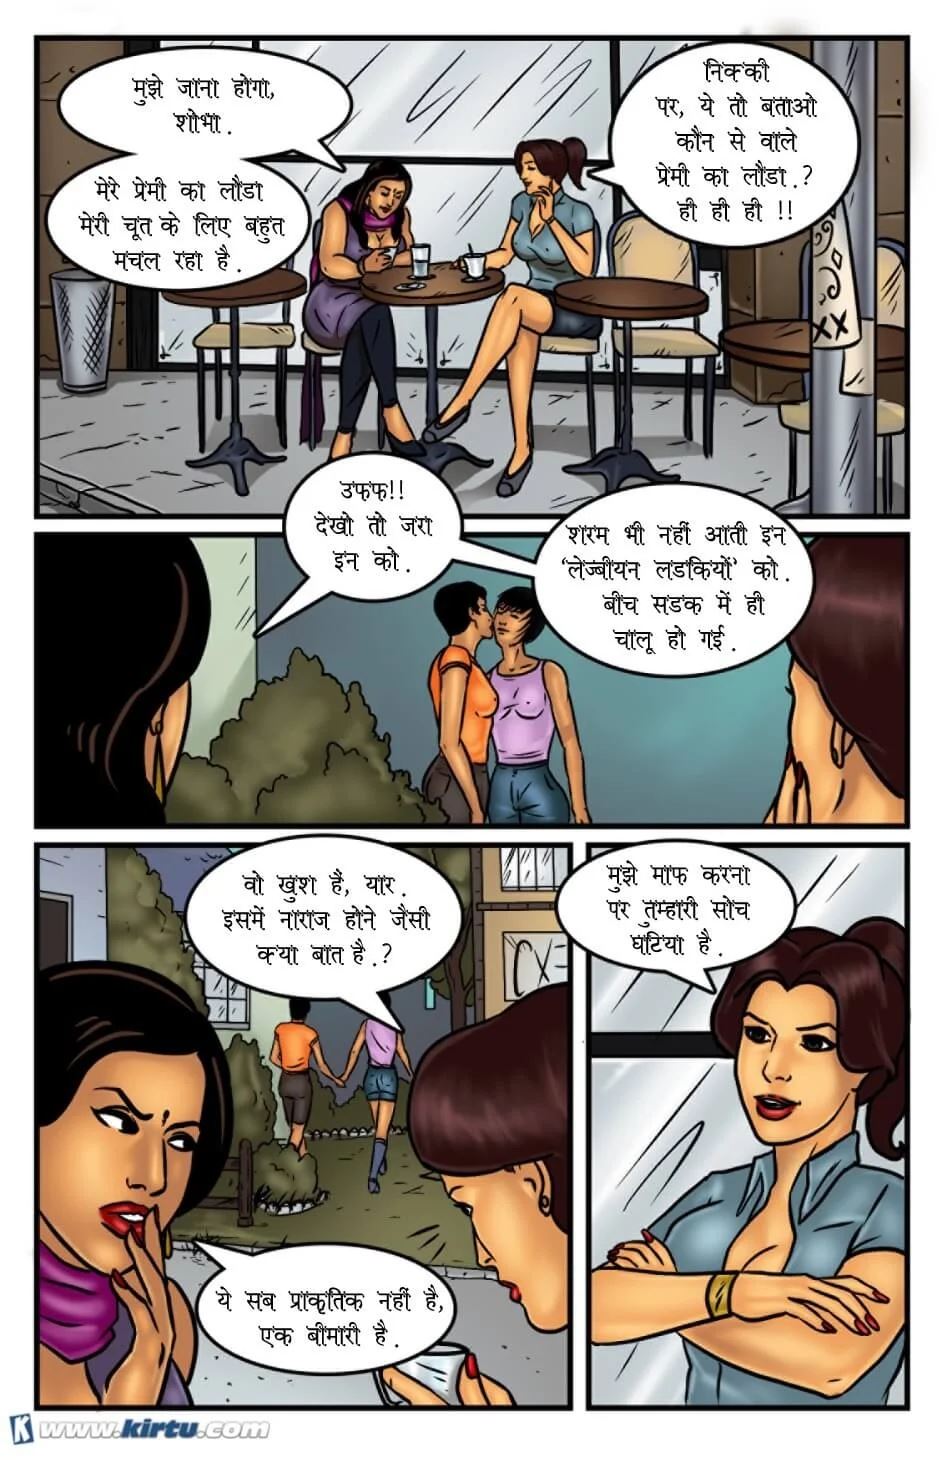 Hindi porn comics read online